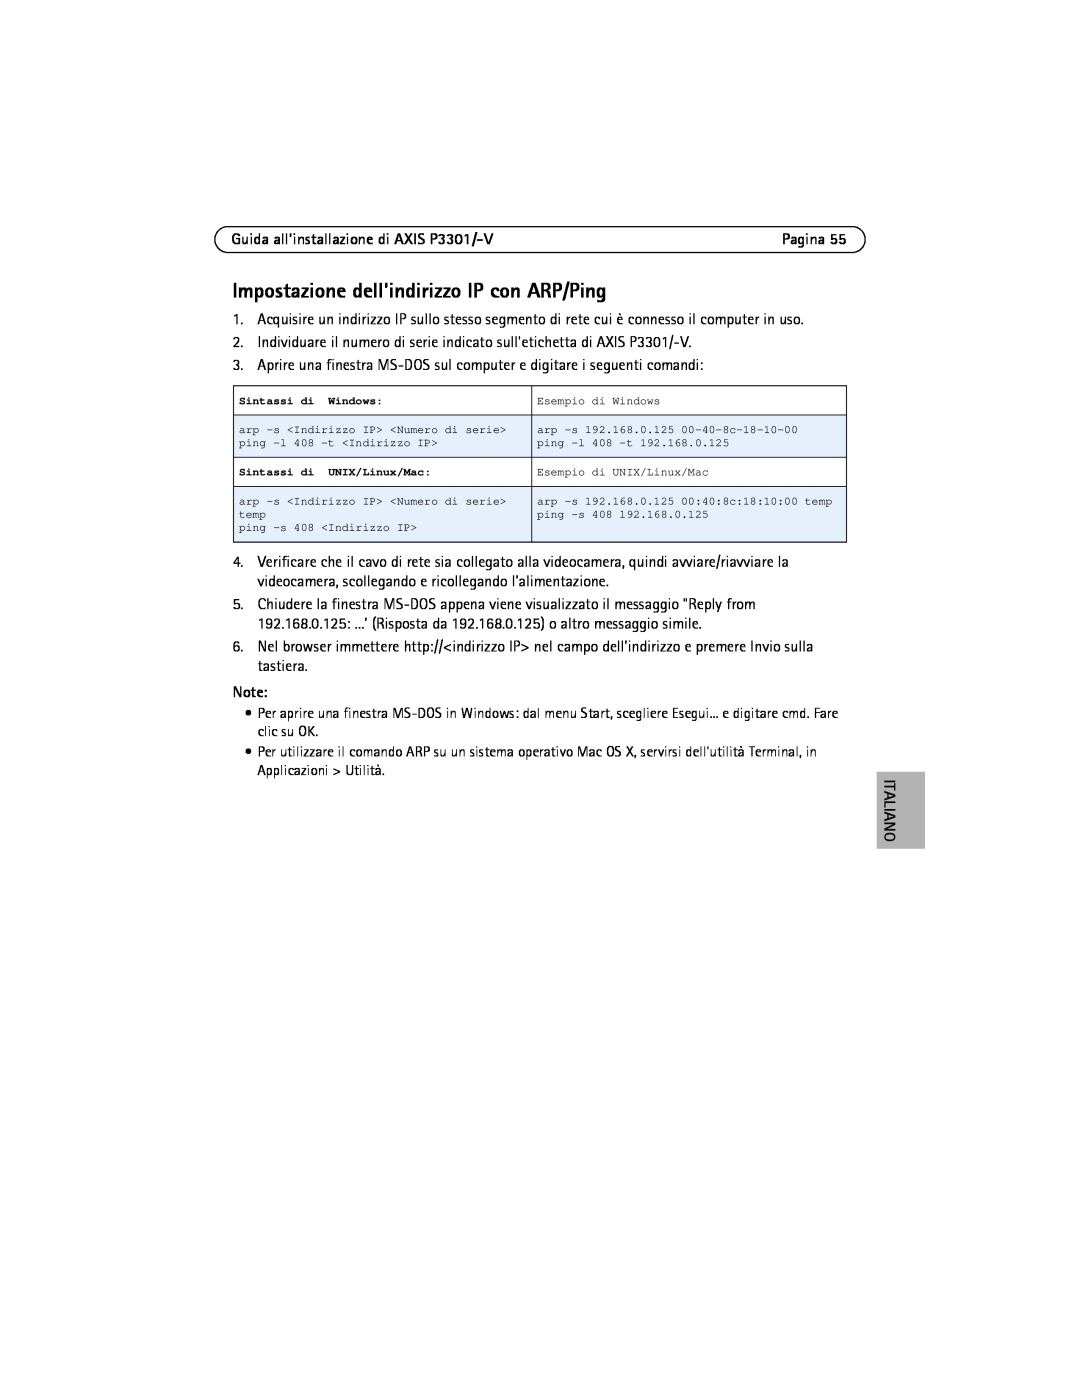 Axis Communications manual Impostazione dellindirizzo IP con ARP/Ping, Guida allinstallazione di AXIS P3301/-V, Italiano 